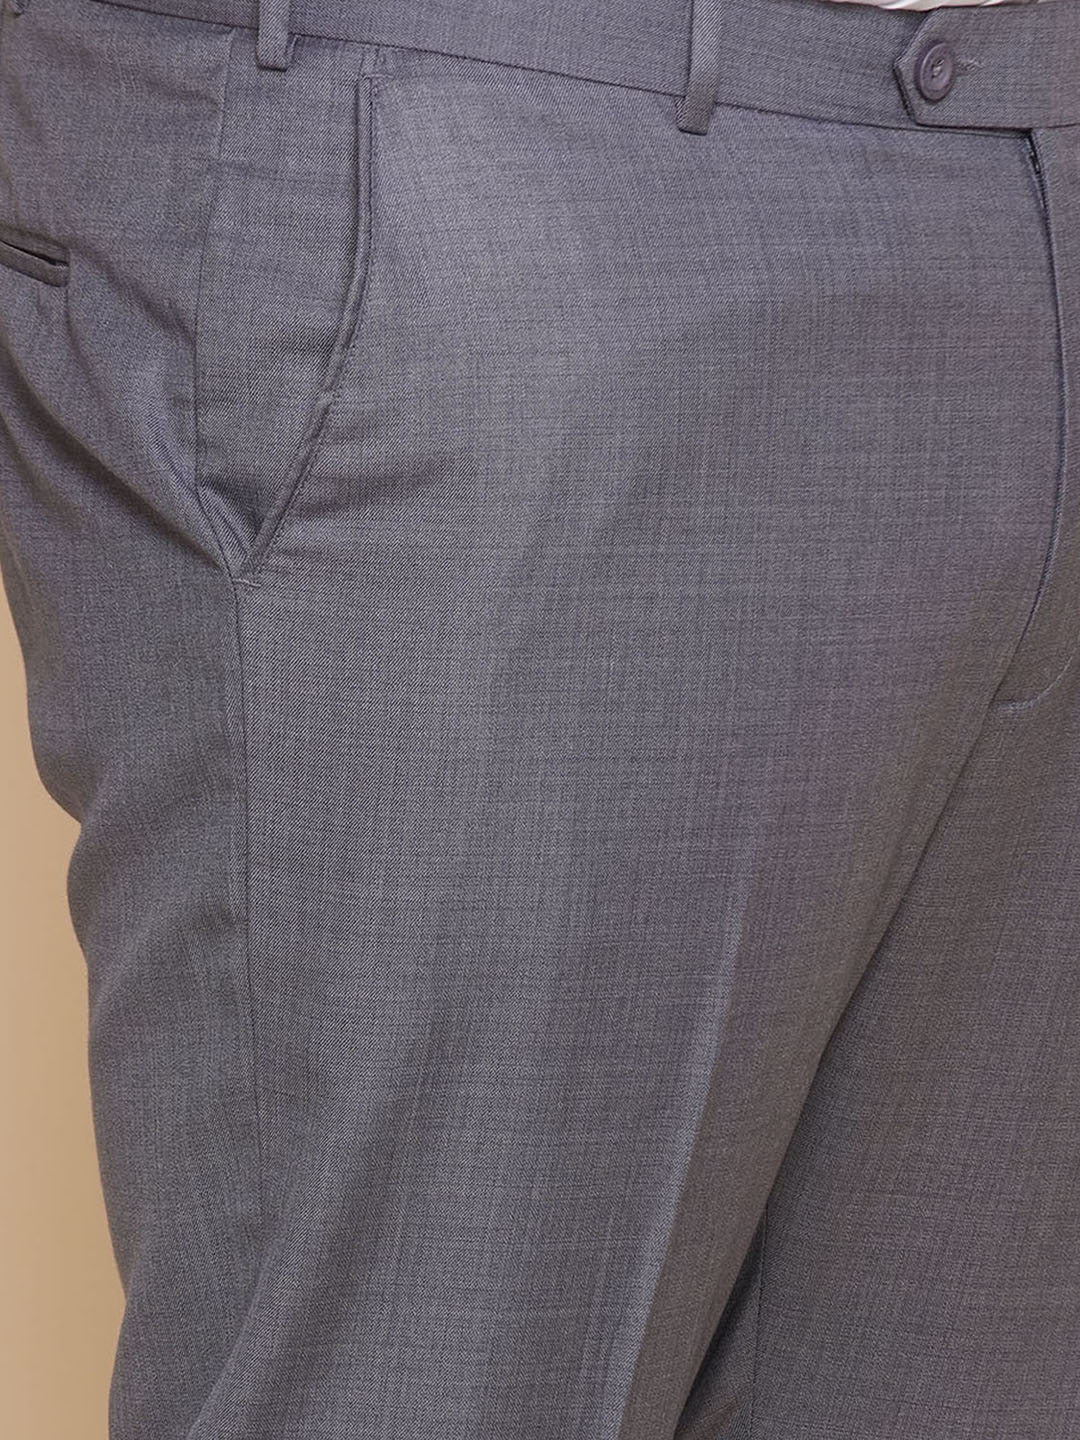 bottomwear/trousers/JPTR22010I/jptr22010i-2.jpg